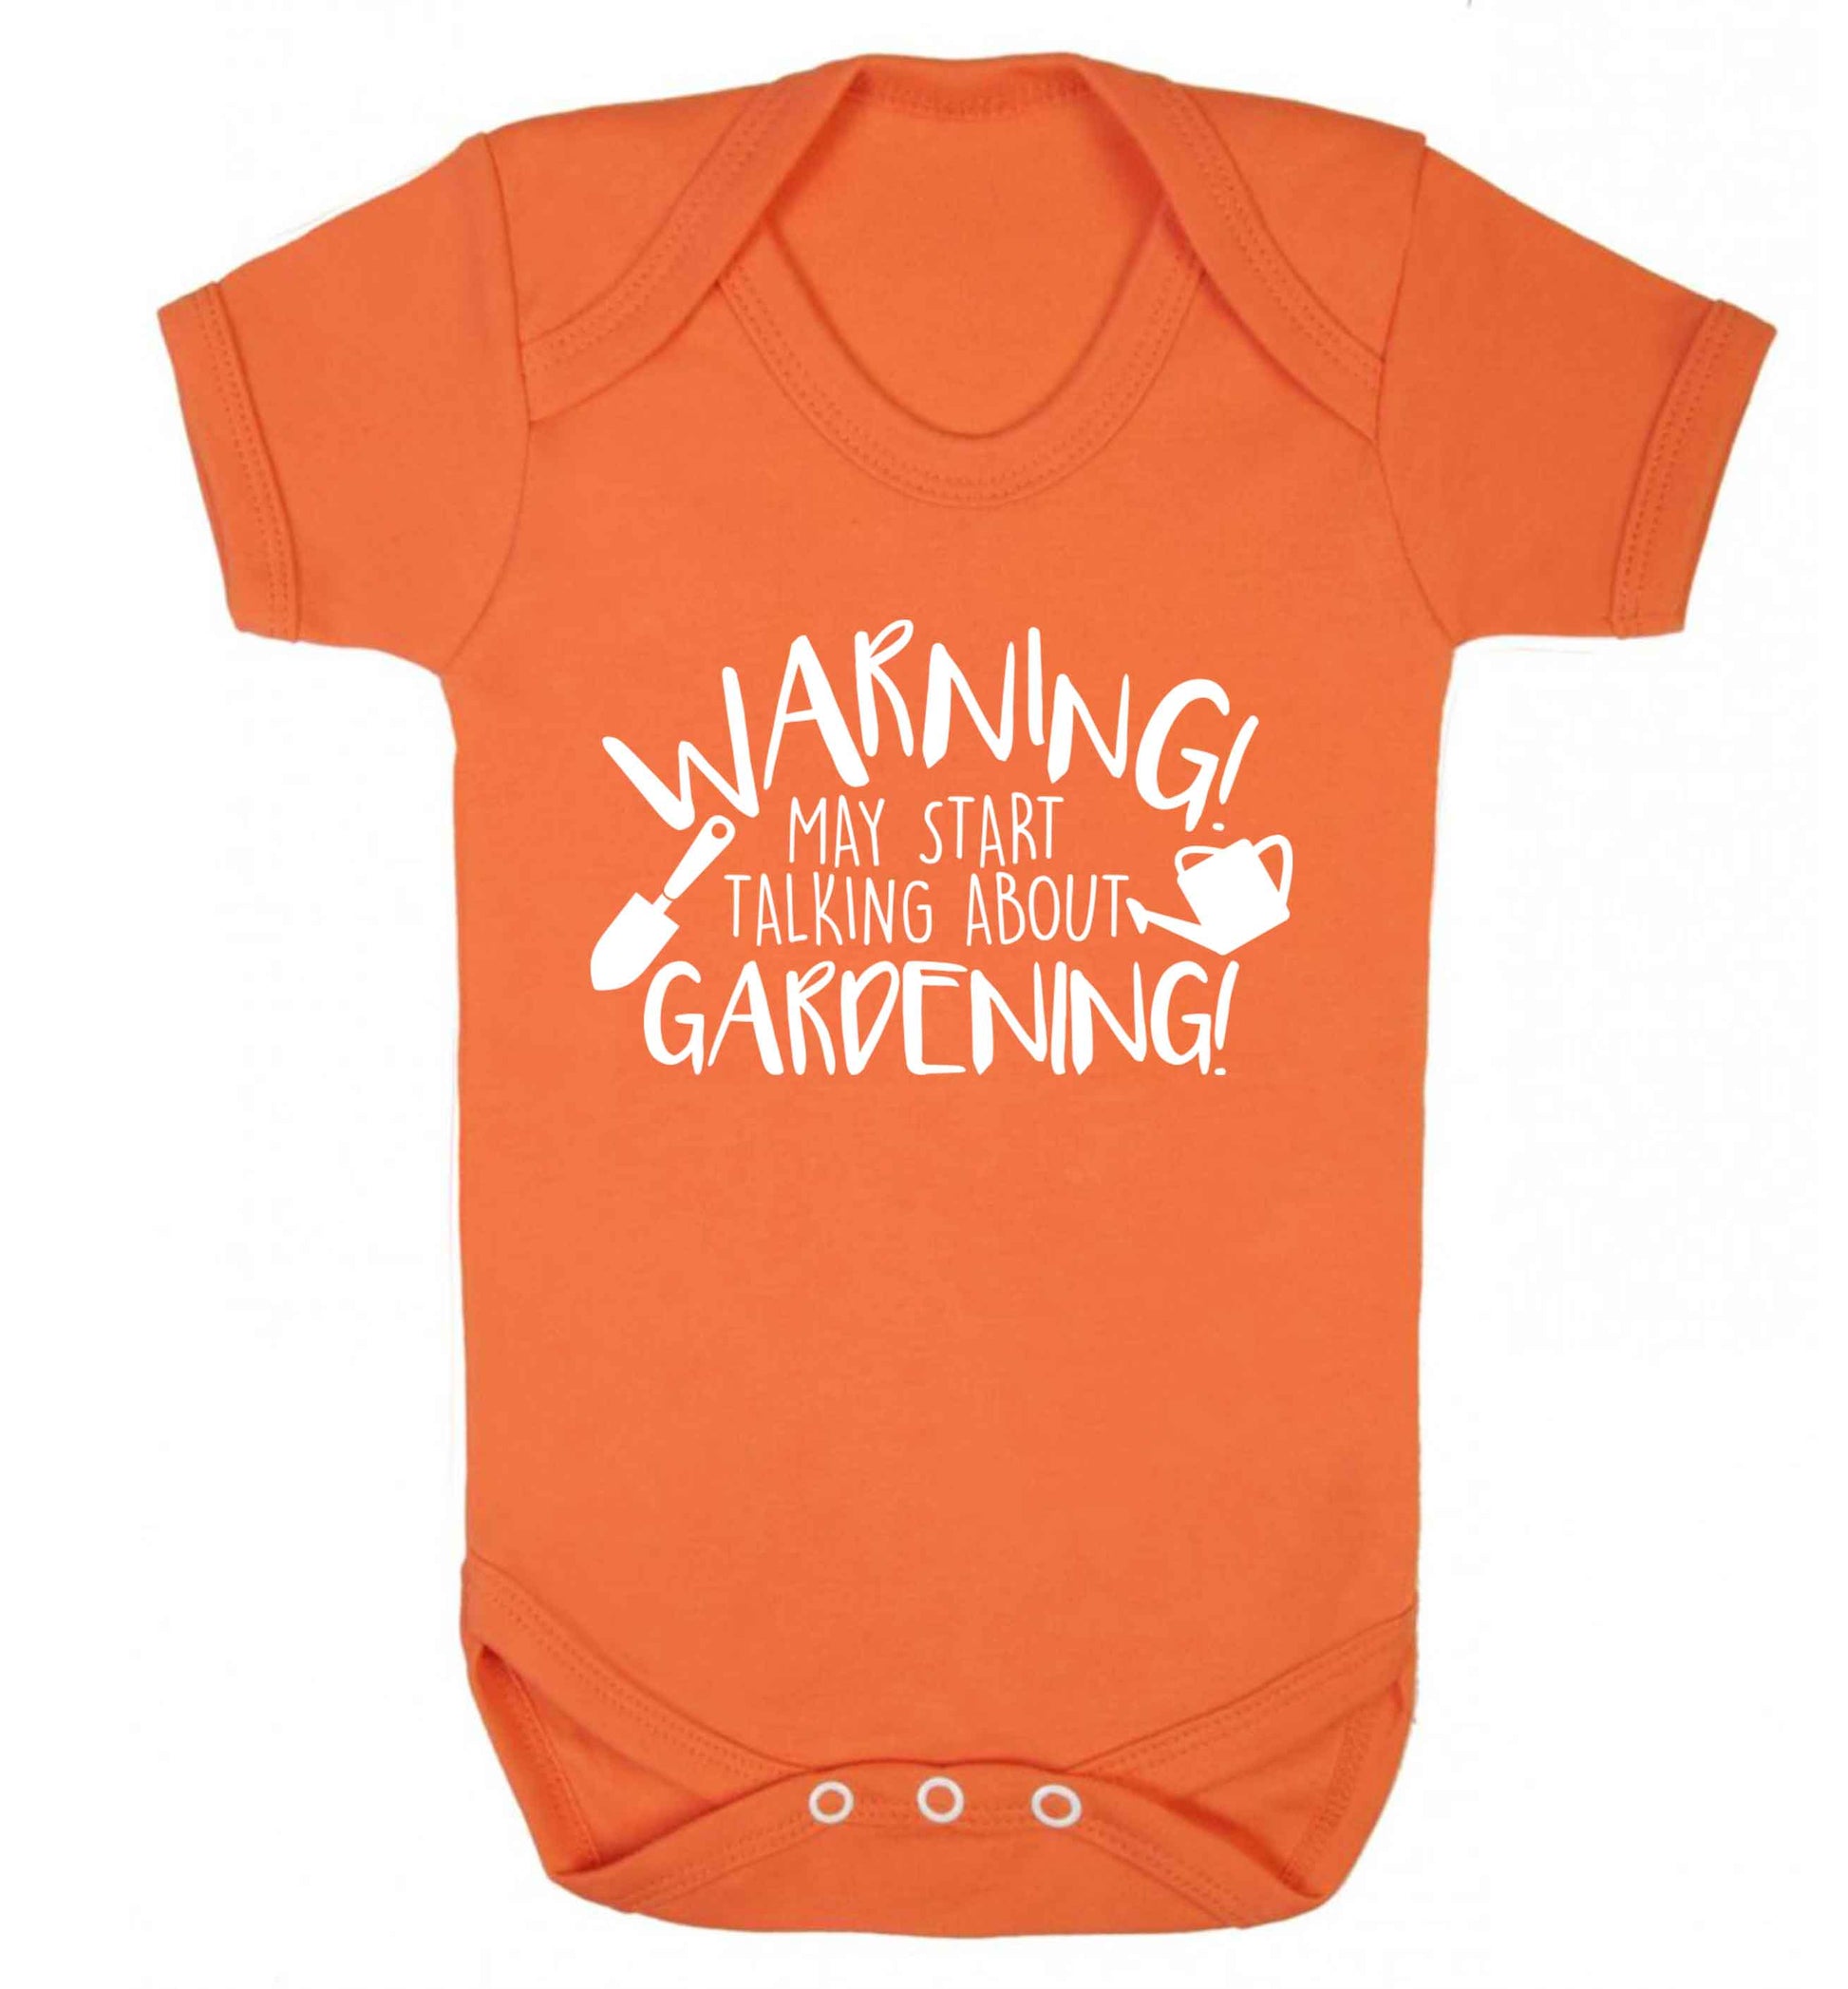 Warning may start talking about gardening Baby Vest orange 18-24 months